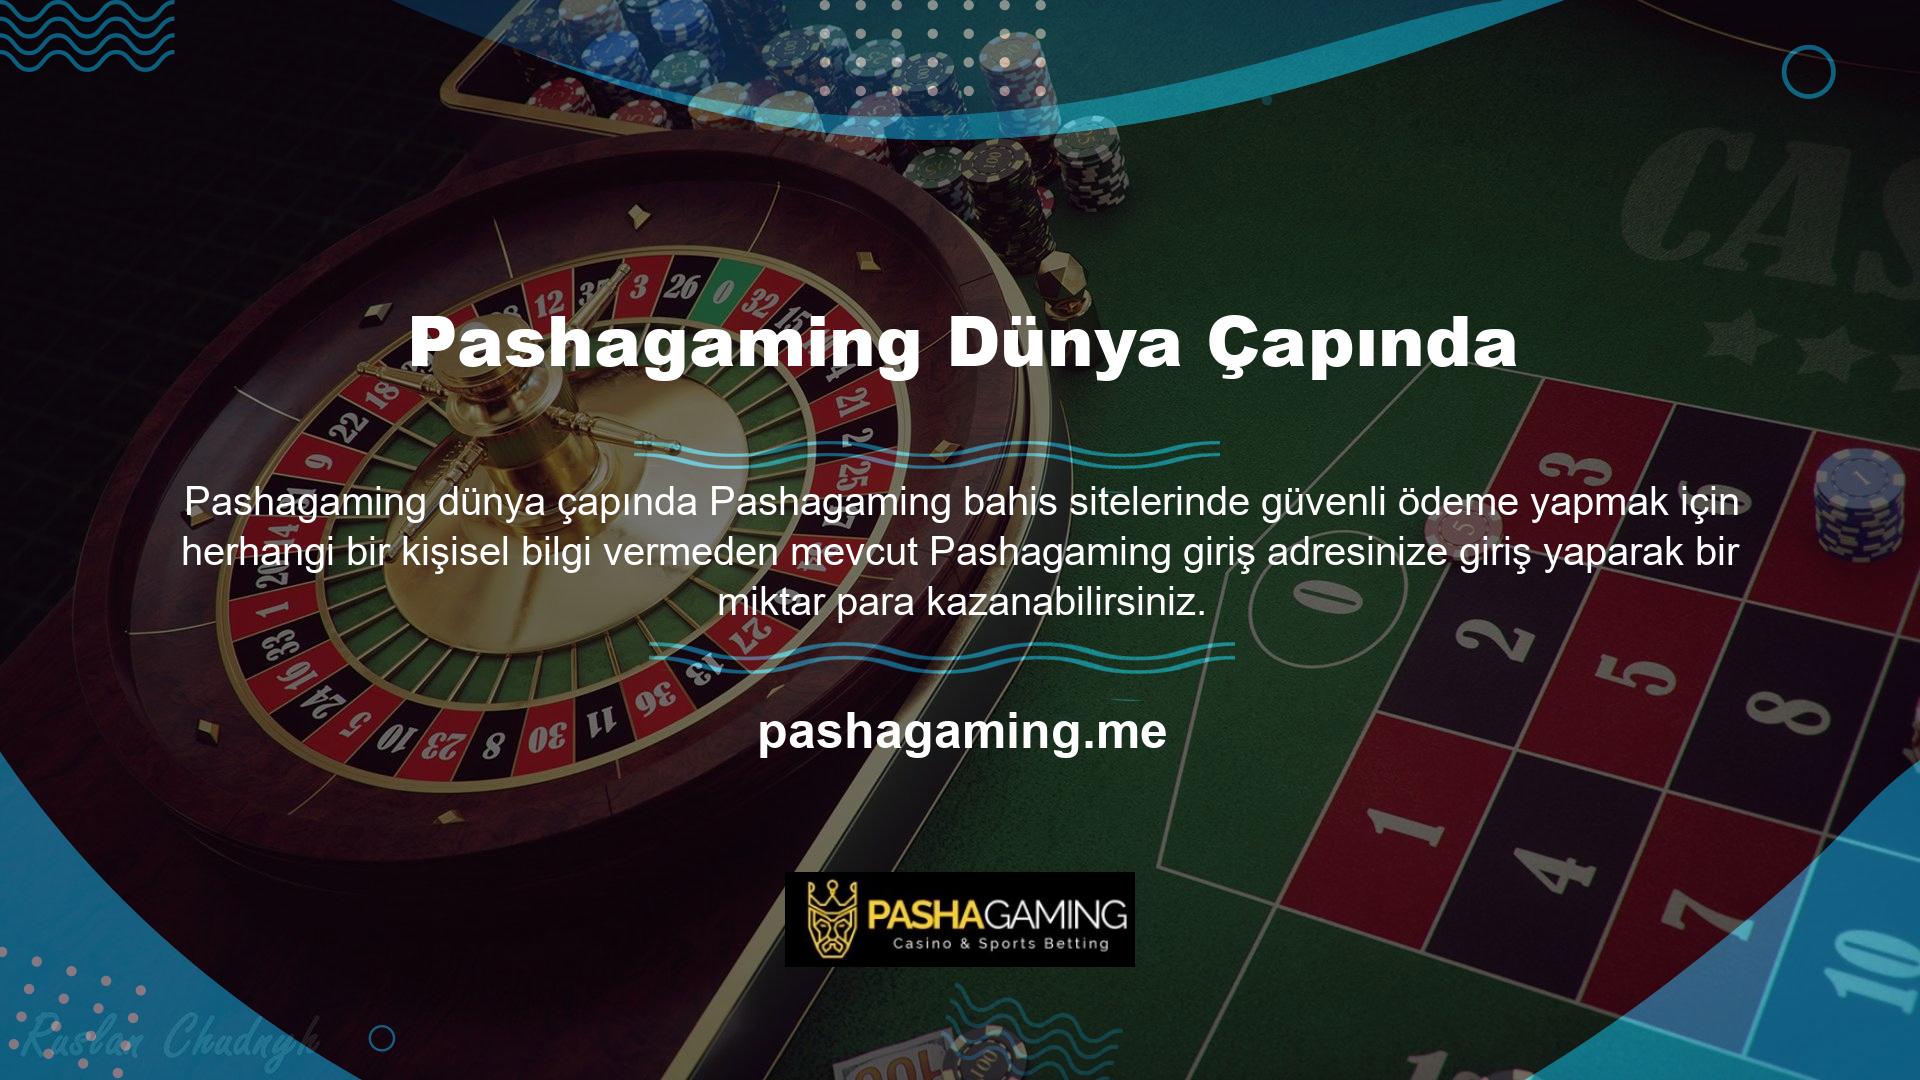 Pashagaming Betting, üyelere kazançlarını siteden hesaplarına taşıyabilmeleri için çeşitli yöntemler sunmaktadır